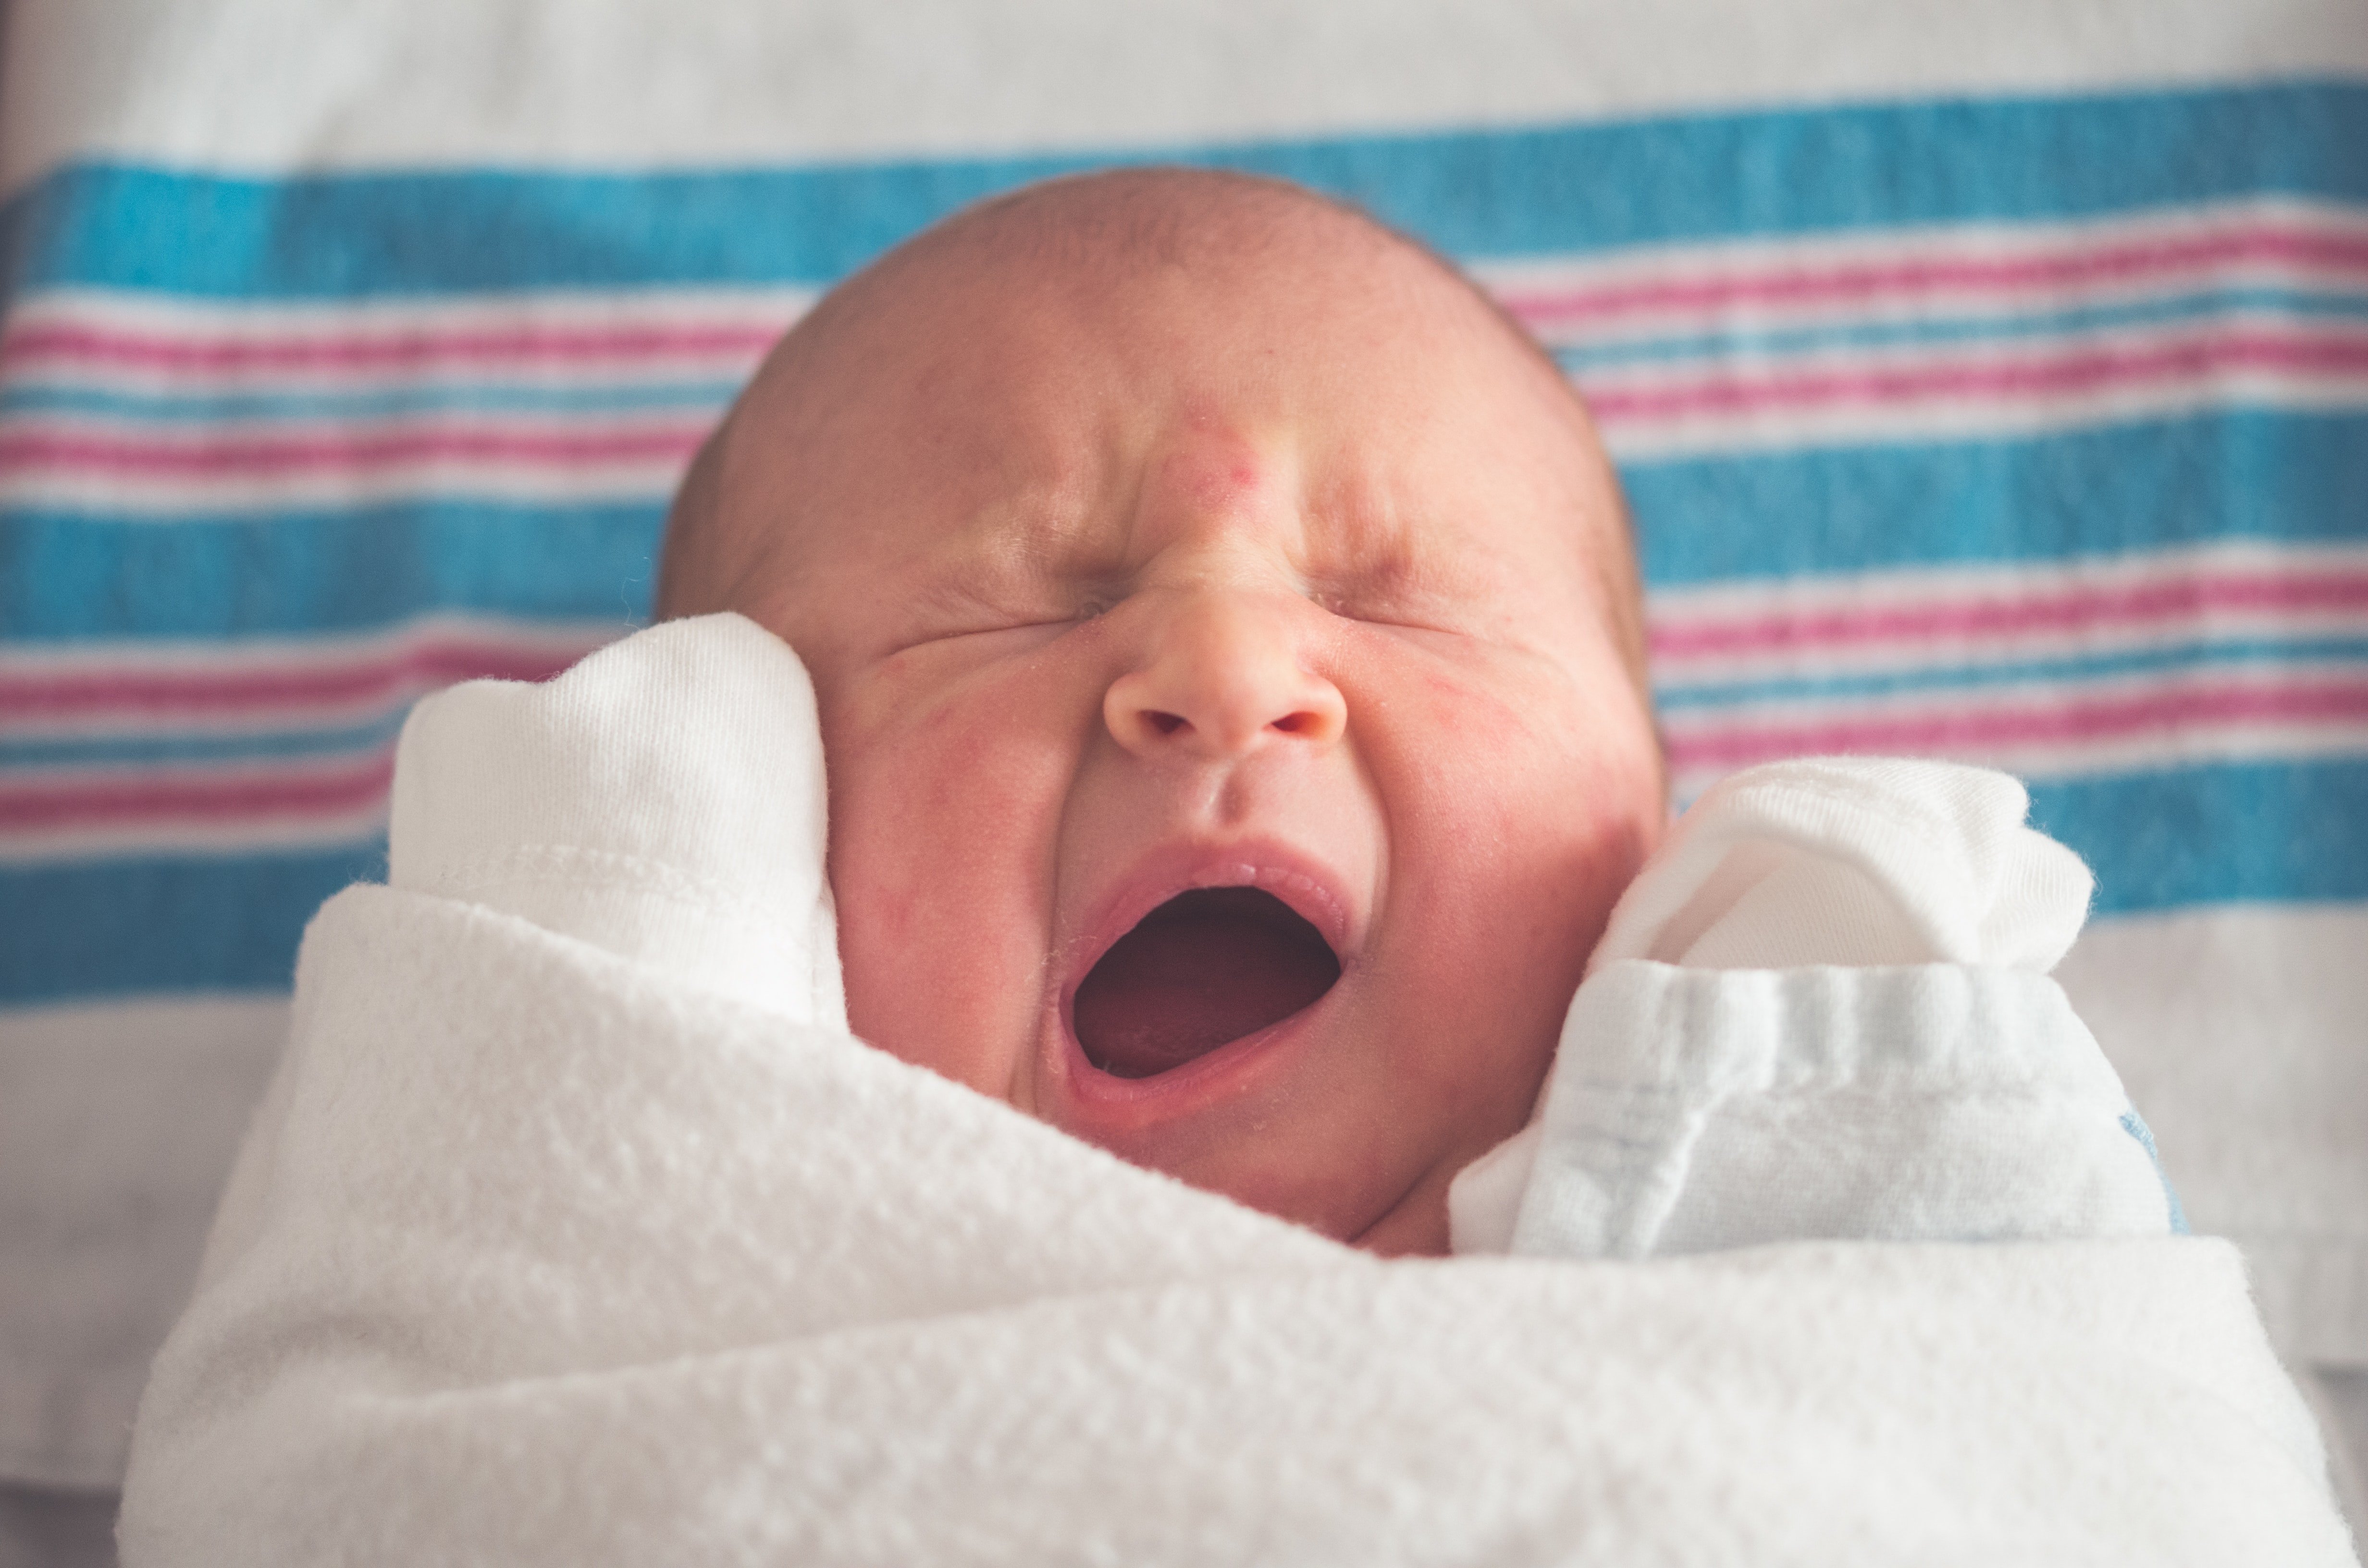 Nachdem er seinen neugeborenen Jungen gesehen hatte, stellte OP fest, dass er keine seiner Gesichtszüge hatte. | Quelle: Unsplash